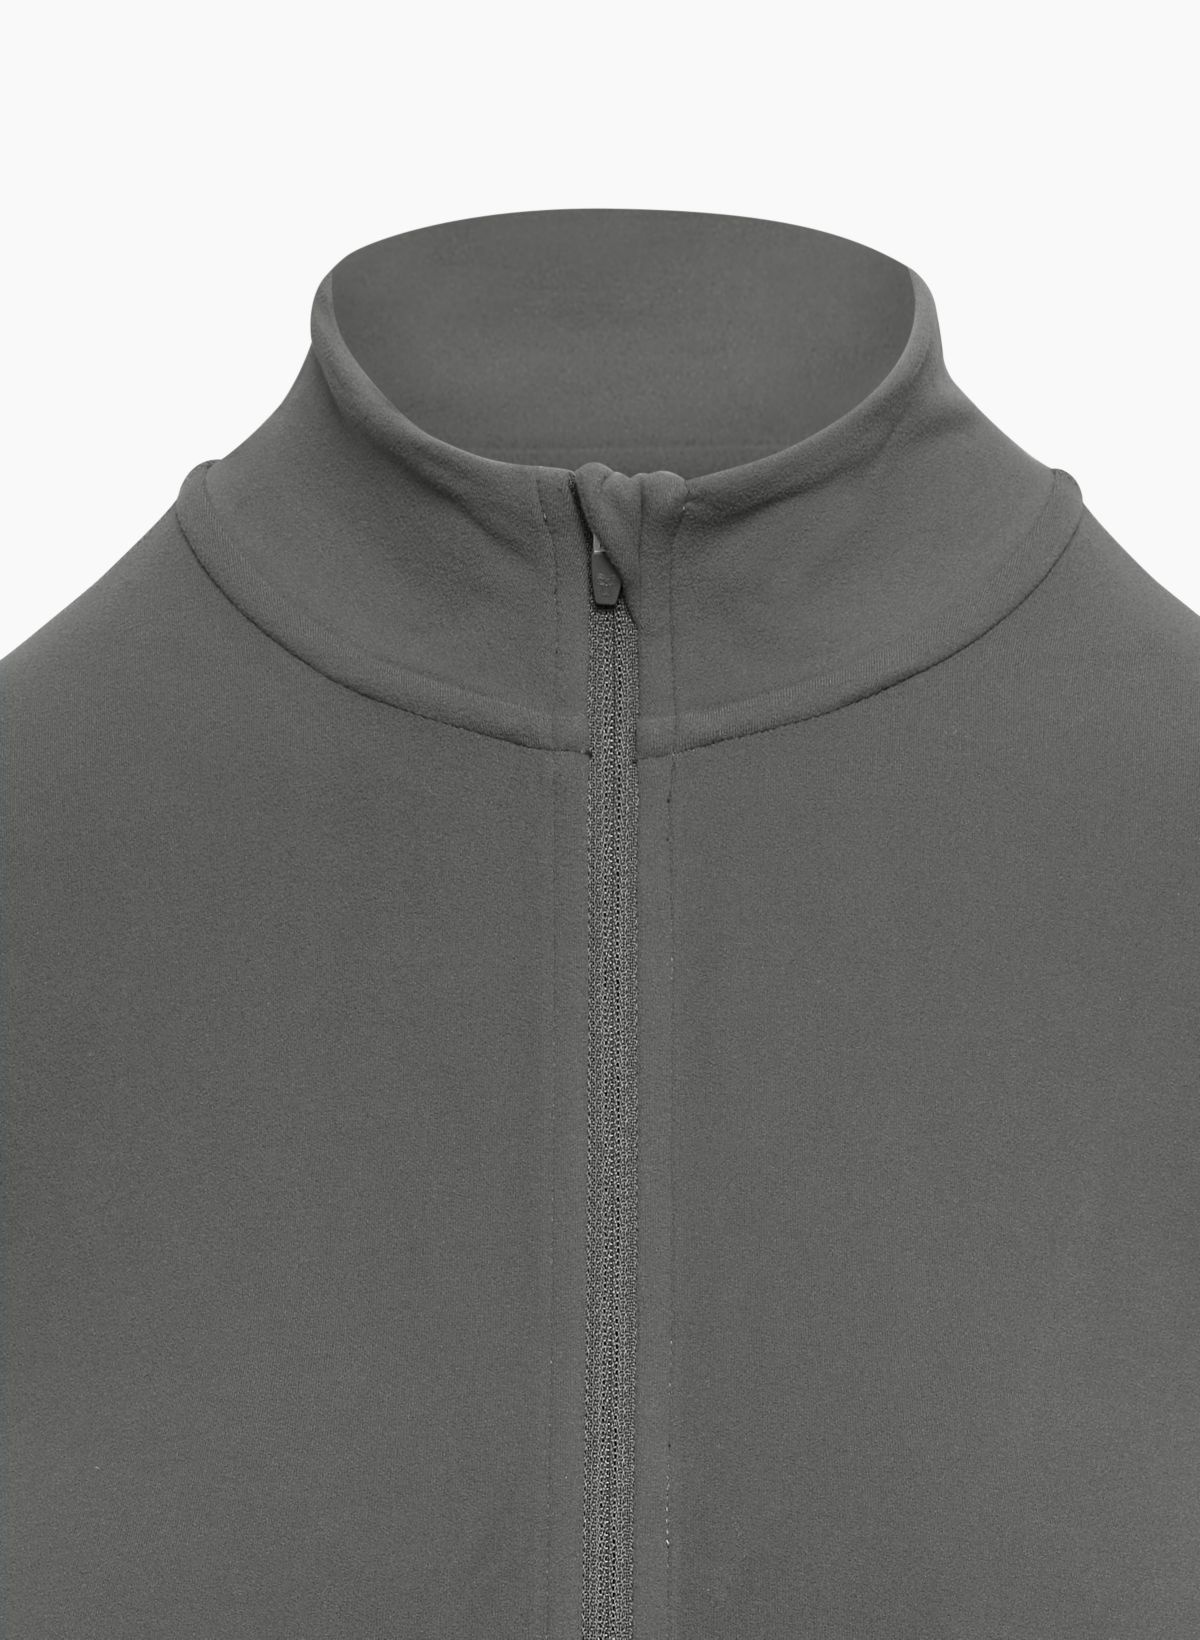 TnAction Women's Tnabutter Limit Zip Longsleeve Jacket in Coal Grey Size Large